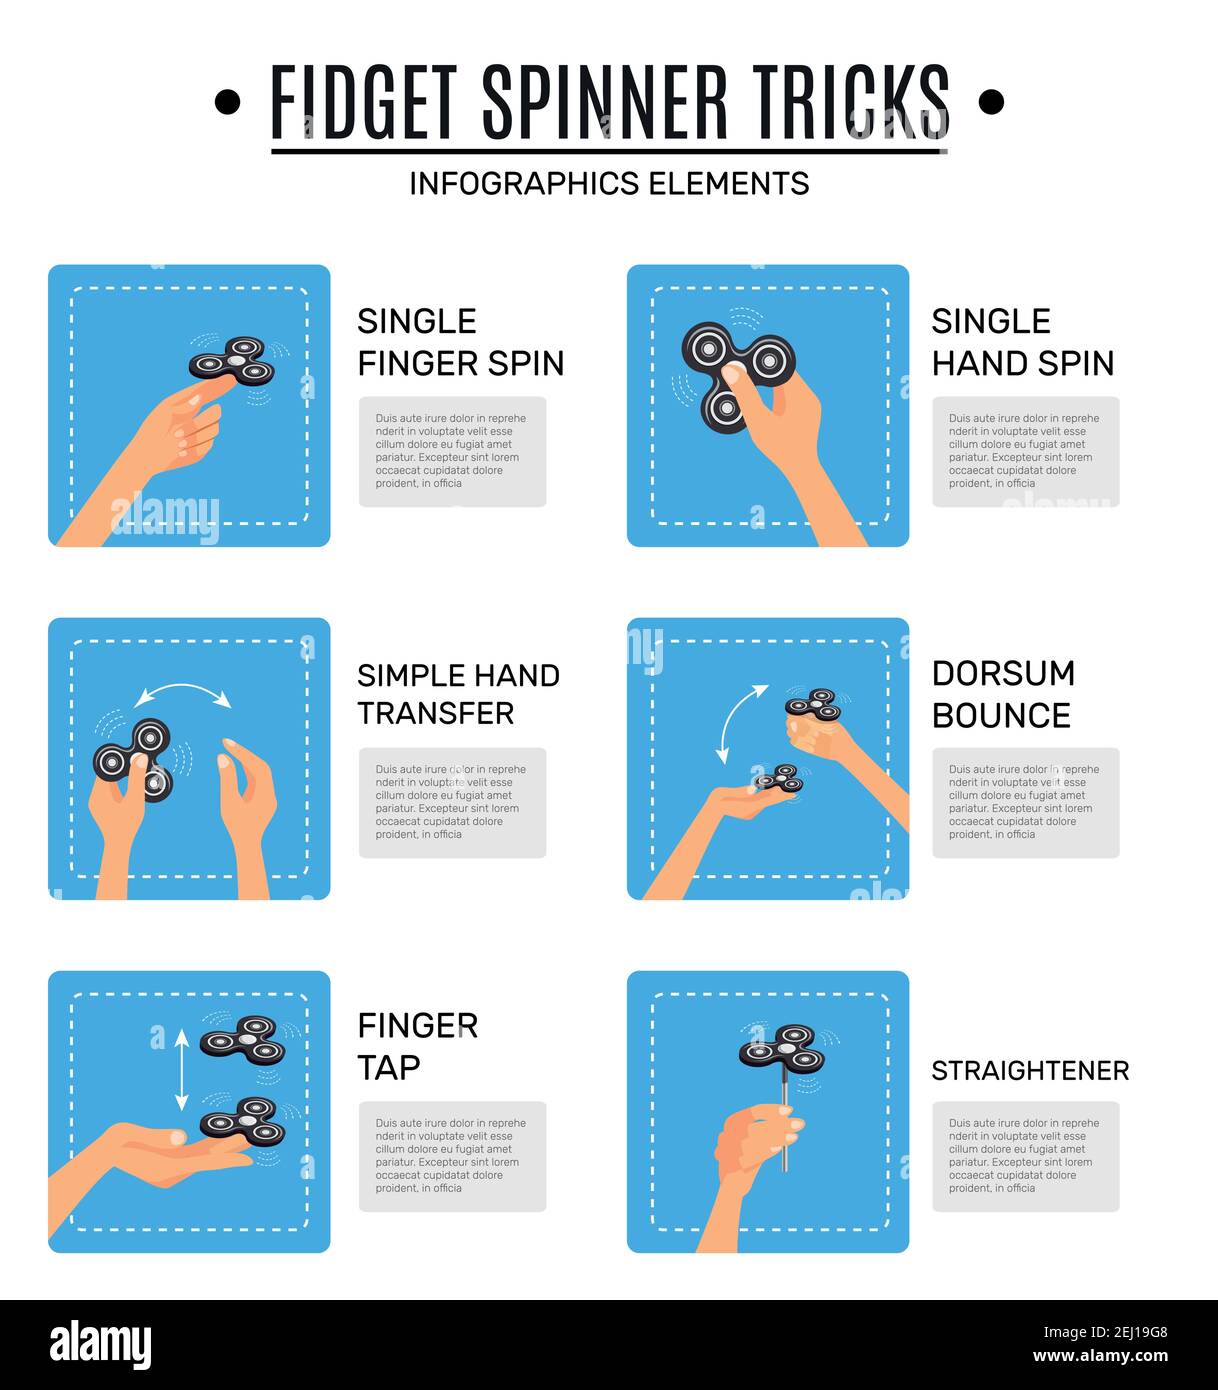 Fidget Spinner Tricks For Beginners 